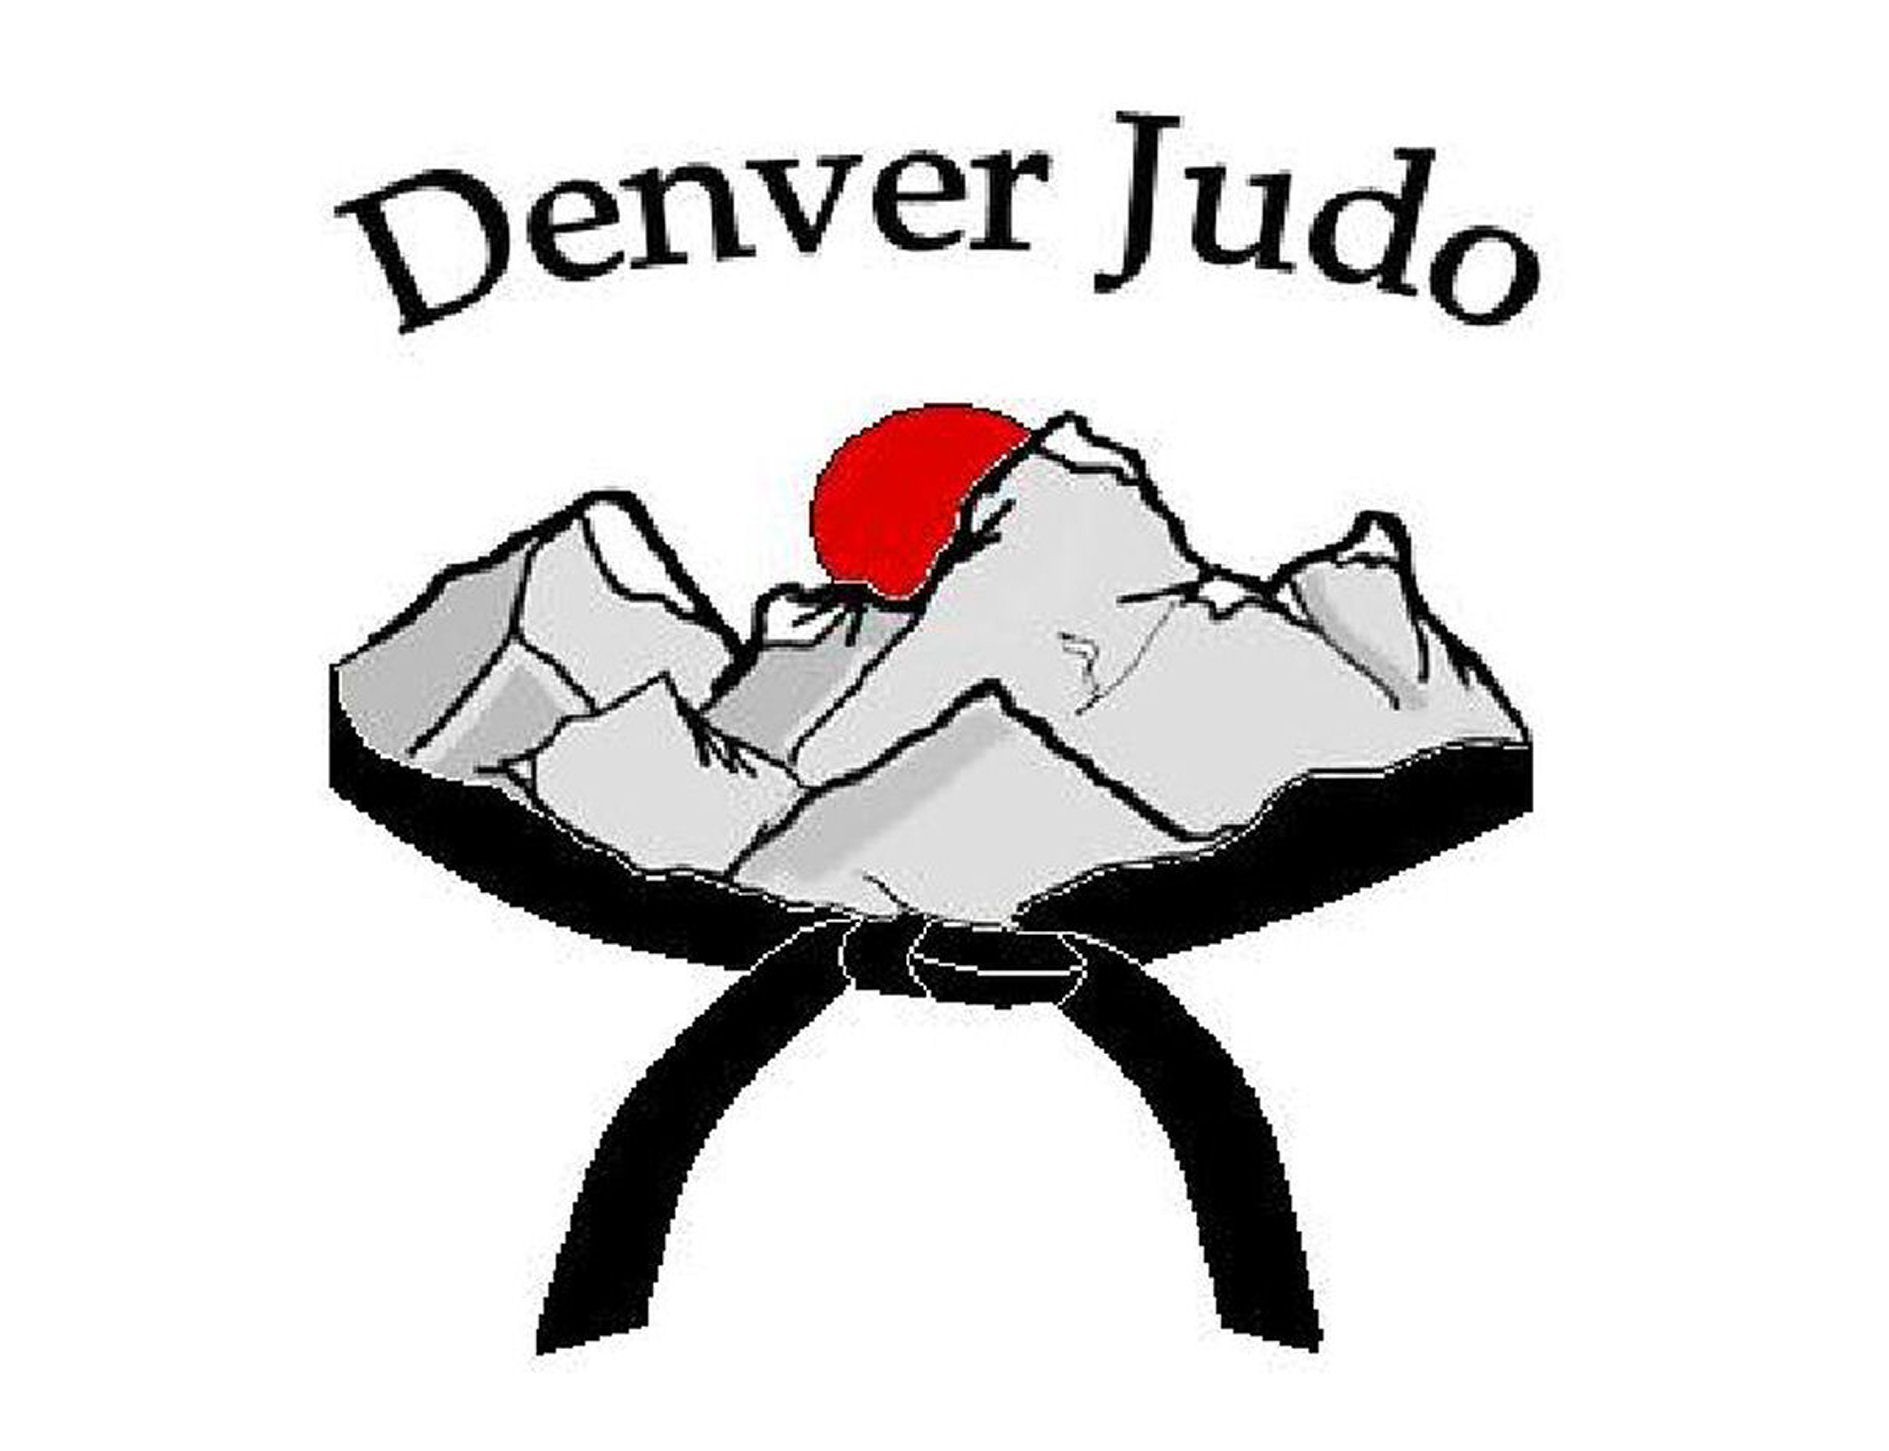 Denver Judo